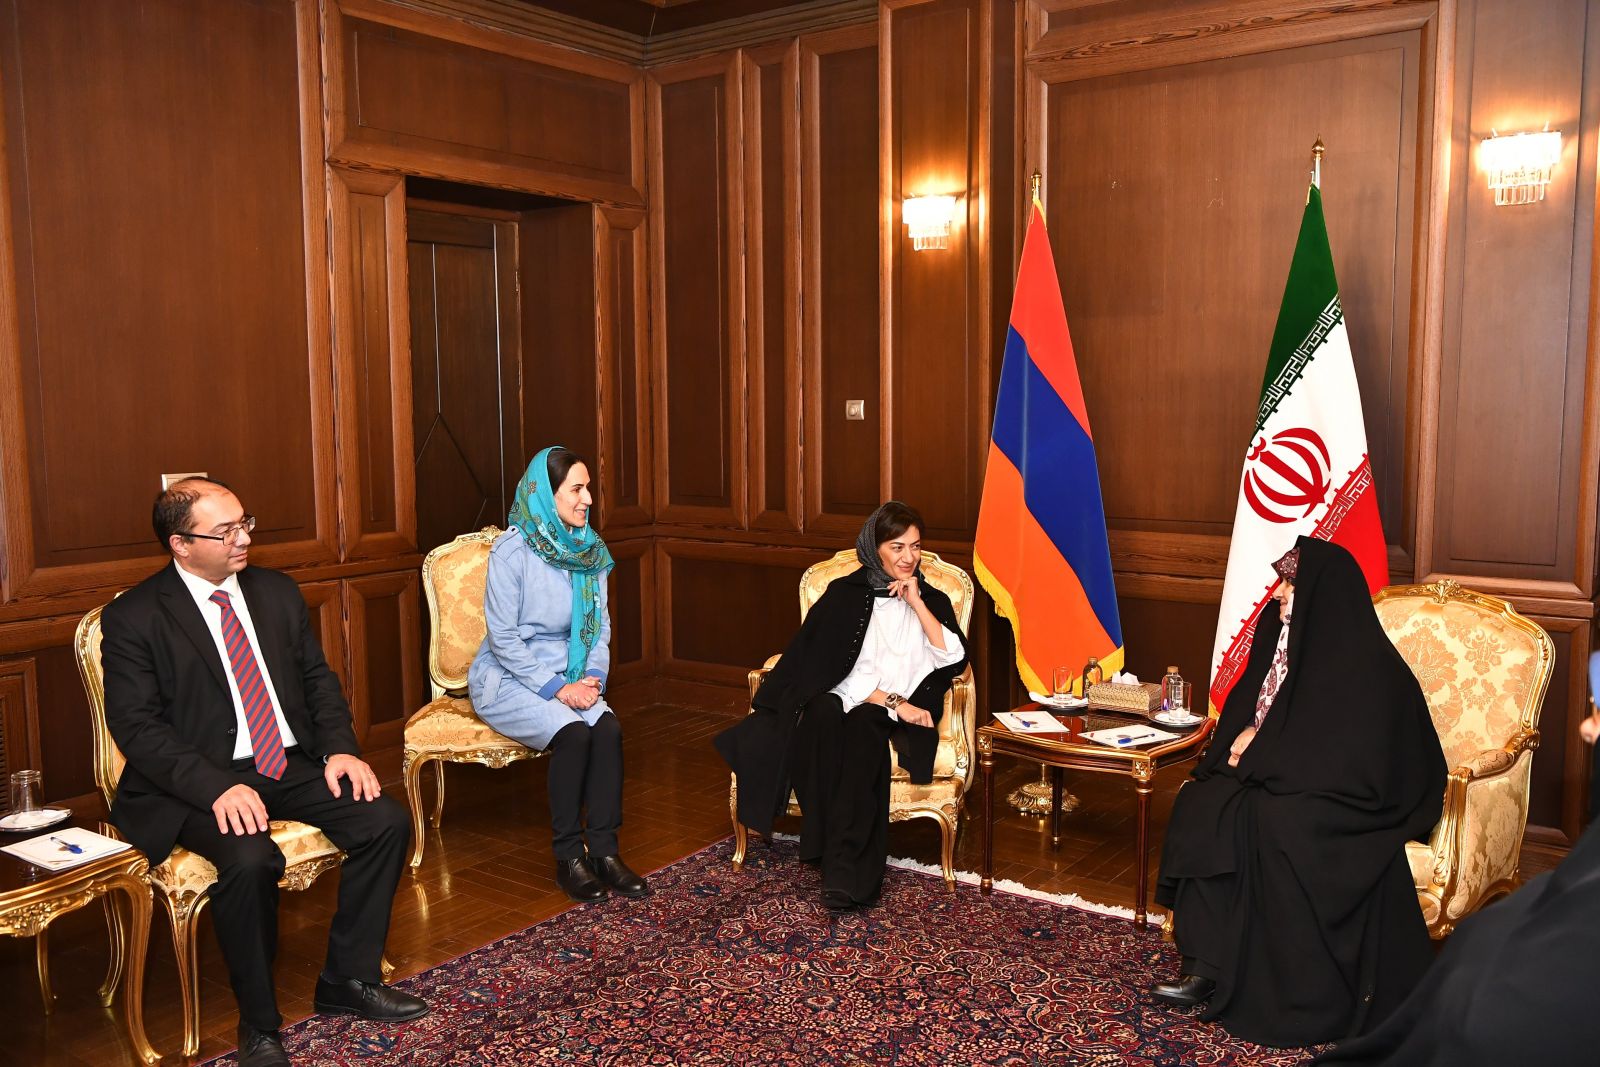 ՀՀ վարչապետի տիկին Աննա Հակոբյանն այցելել է Իրանի Իսլամական Հանրապետություն